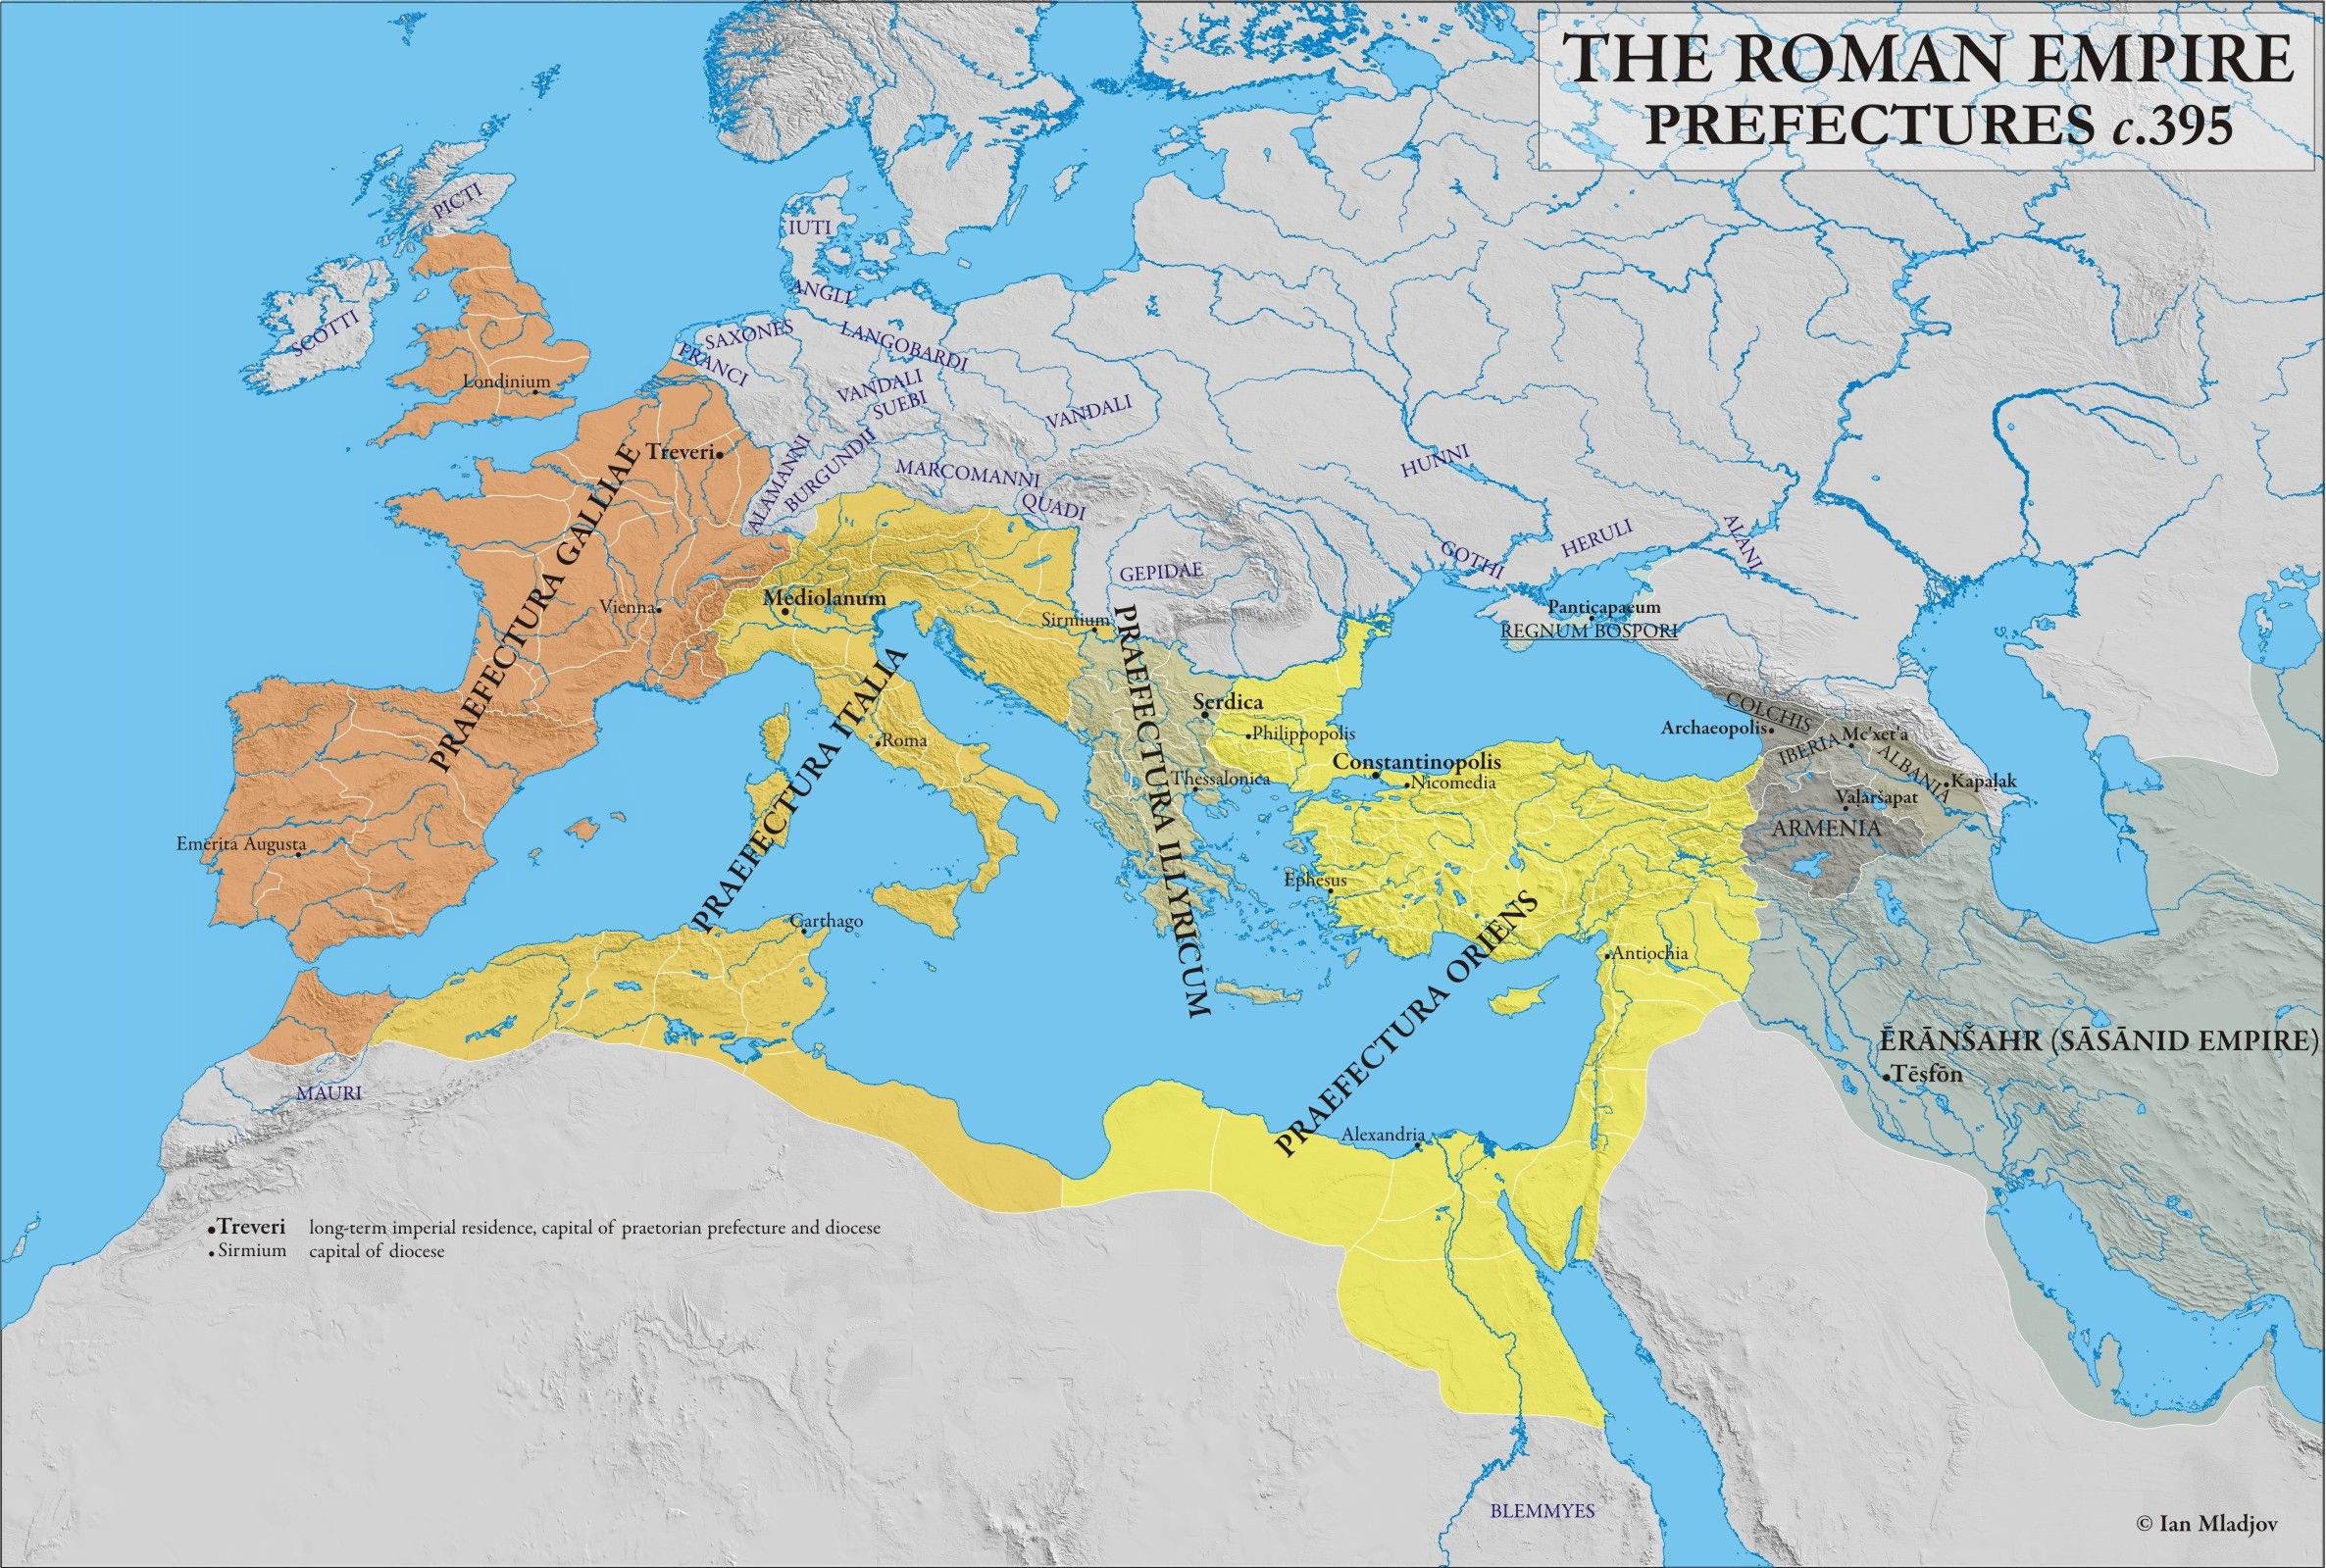 c 395 CE Prefectures of the Roman Empire